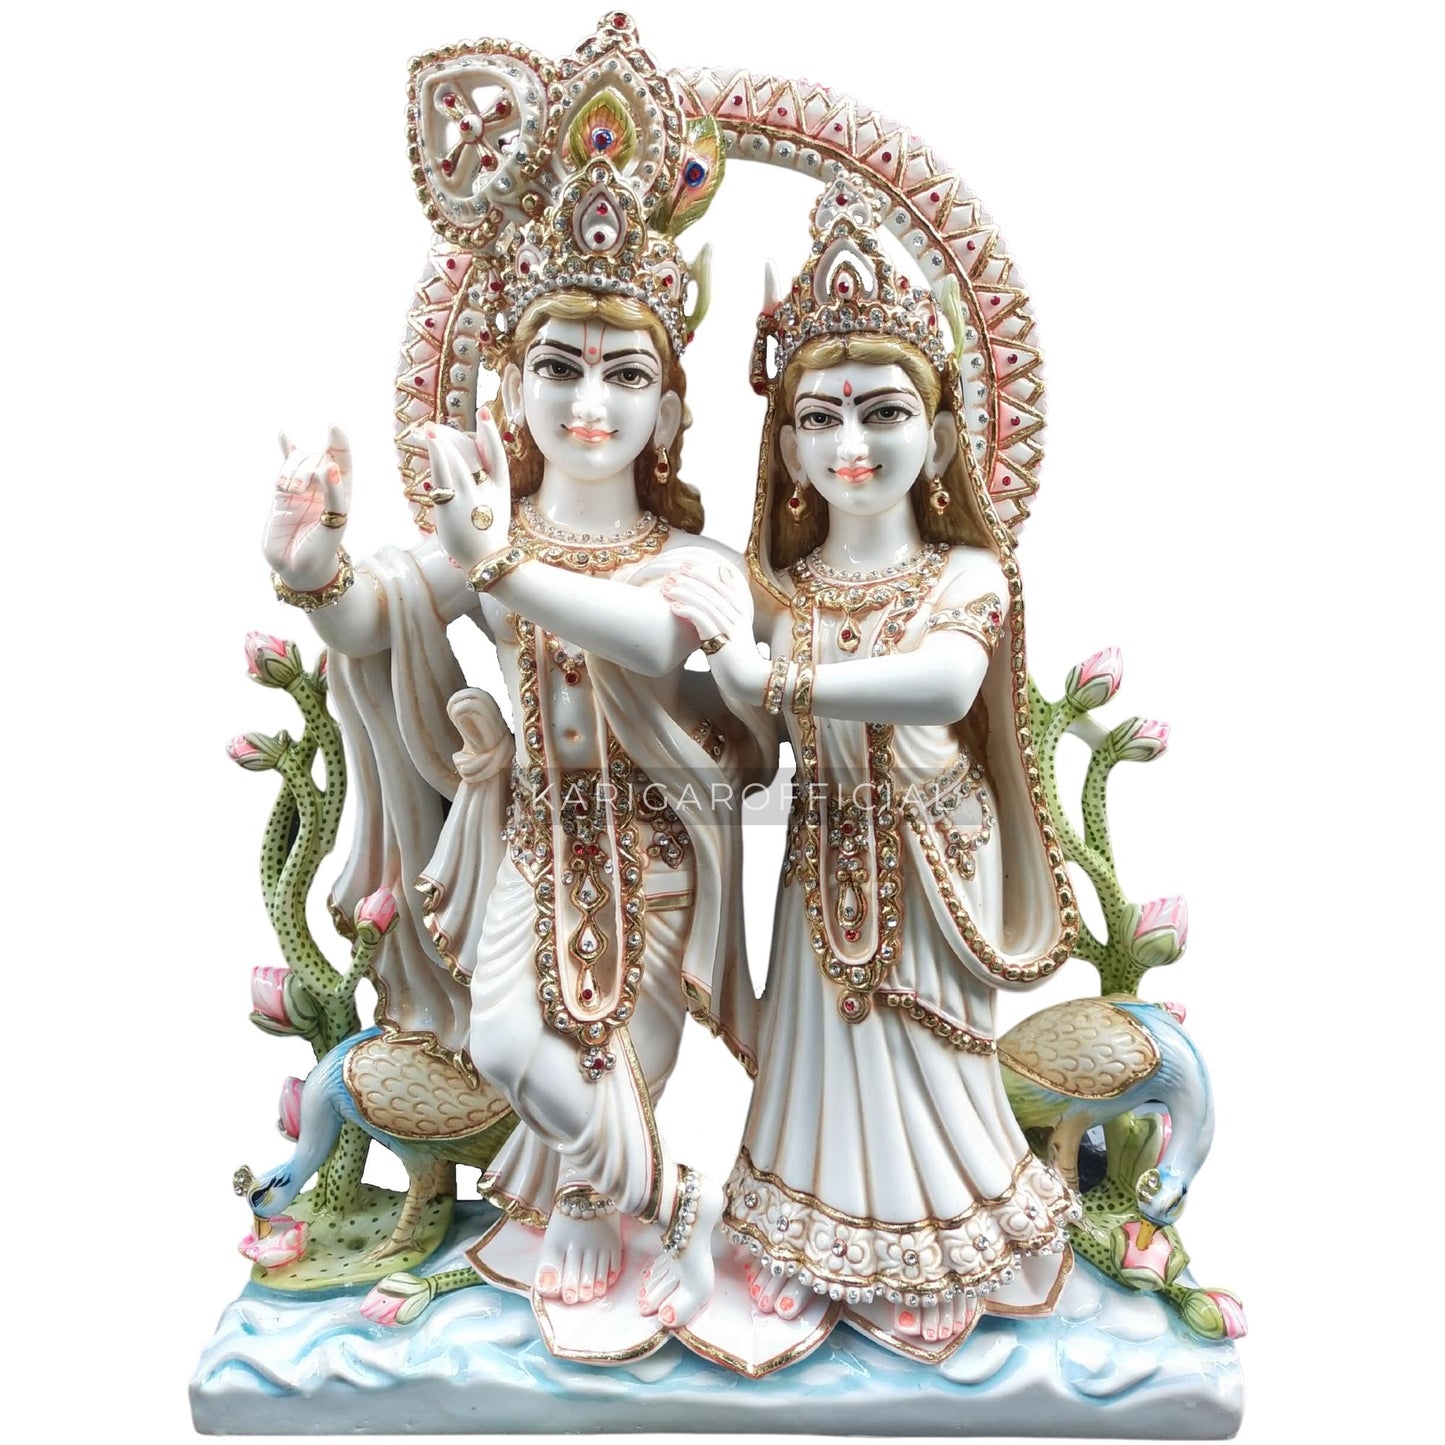 Estatua de Radha Krishna Jugal Jodi Murti grande 30 pulgadas mármol Radha Krishna estatuilla joyería tachonada colorida divina pareja ídolo pintado a mano especial boda inauguración aniversario regalos escultura